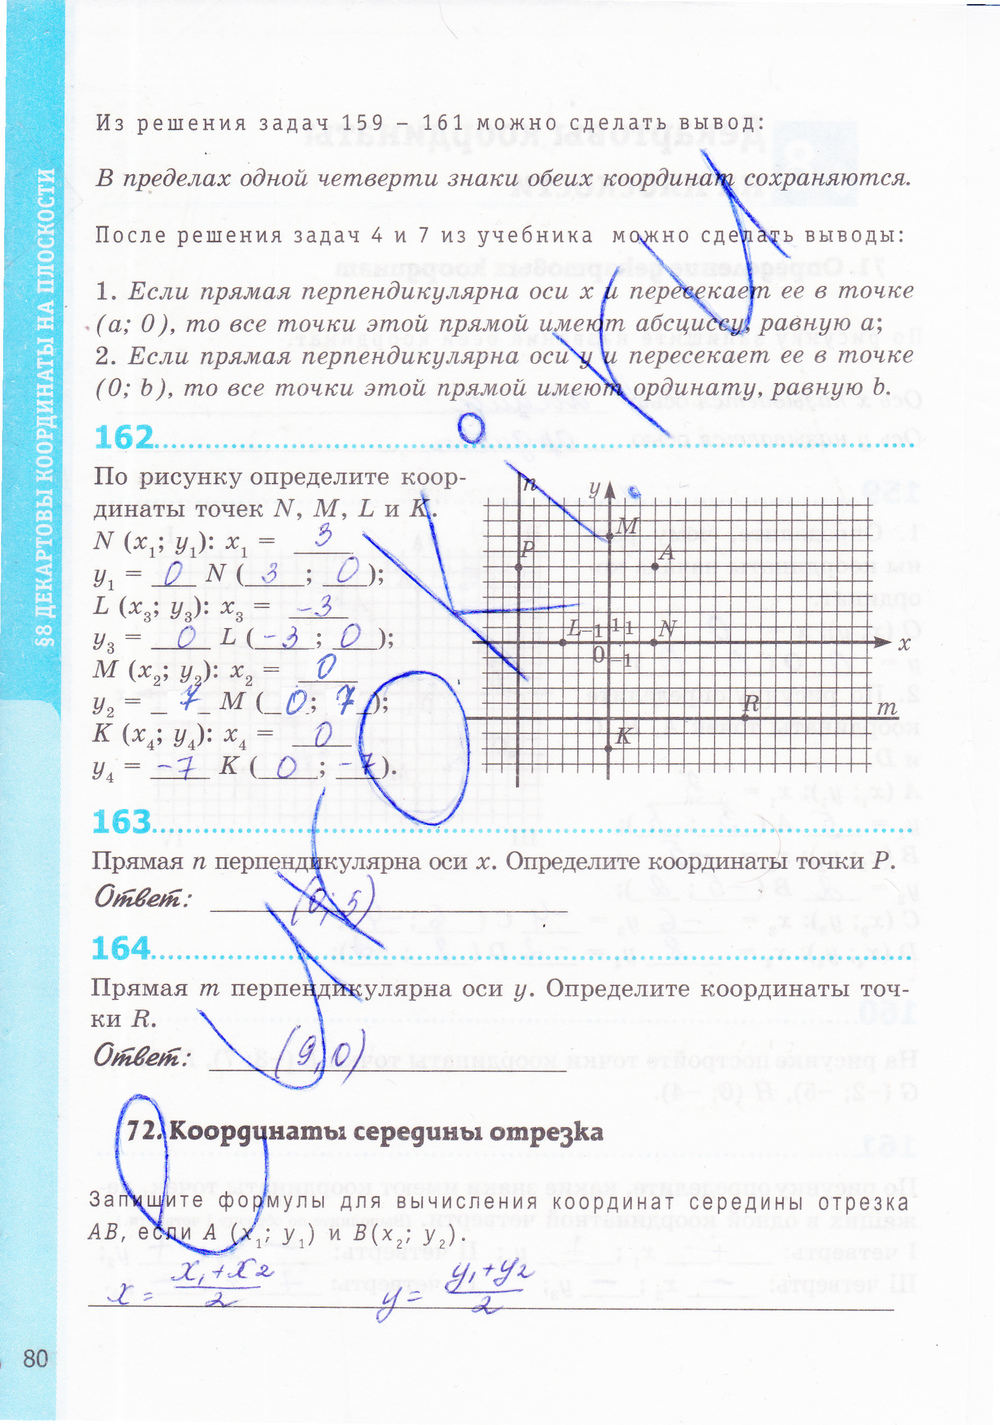 Страница (упражнение) 80 рабочей тетради. Страница 80 ГДЗ рабочая тетрадь по геометрии 8 класс Мищенко